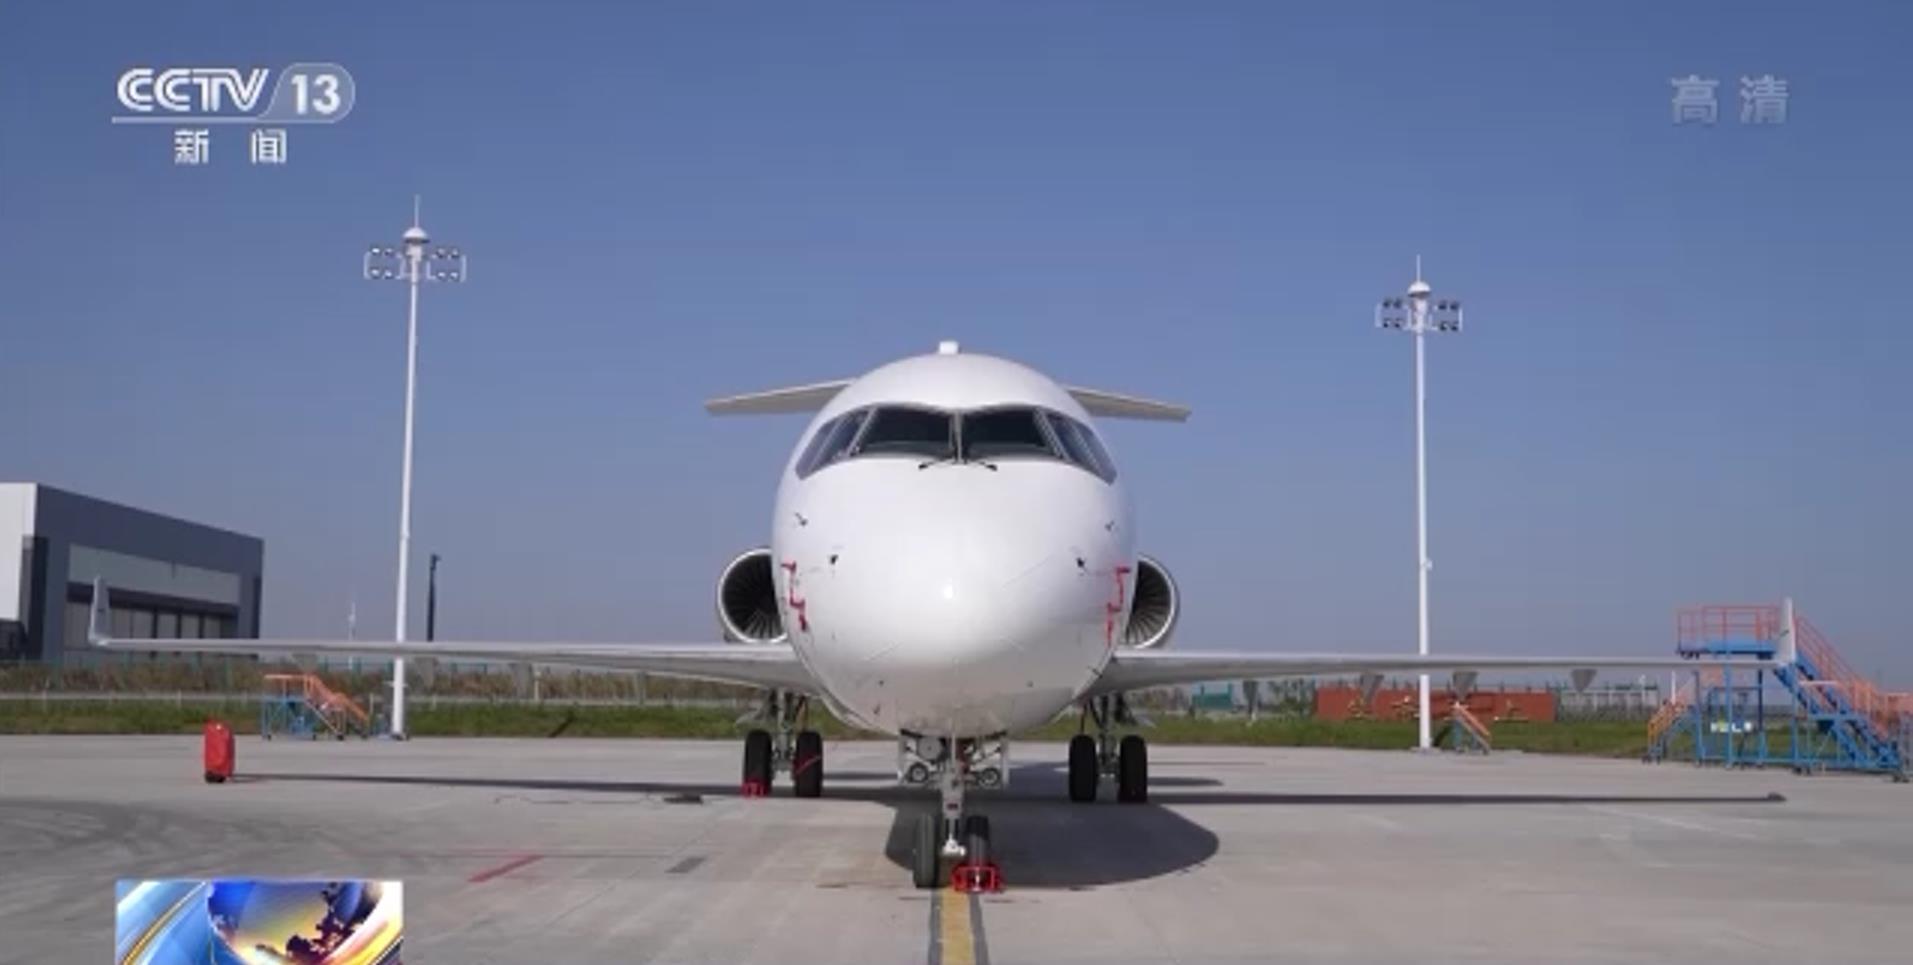 中国喷气式支线客机arj21首次交付海外迈出商业运营新步伐